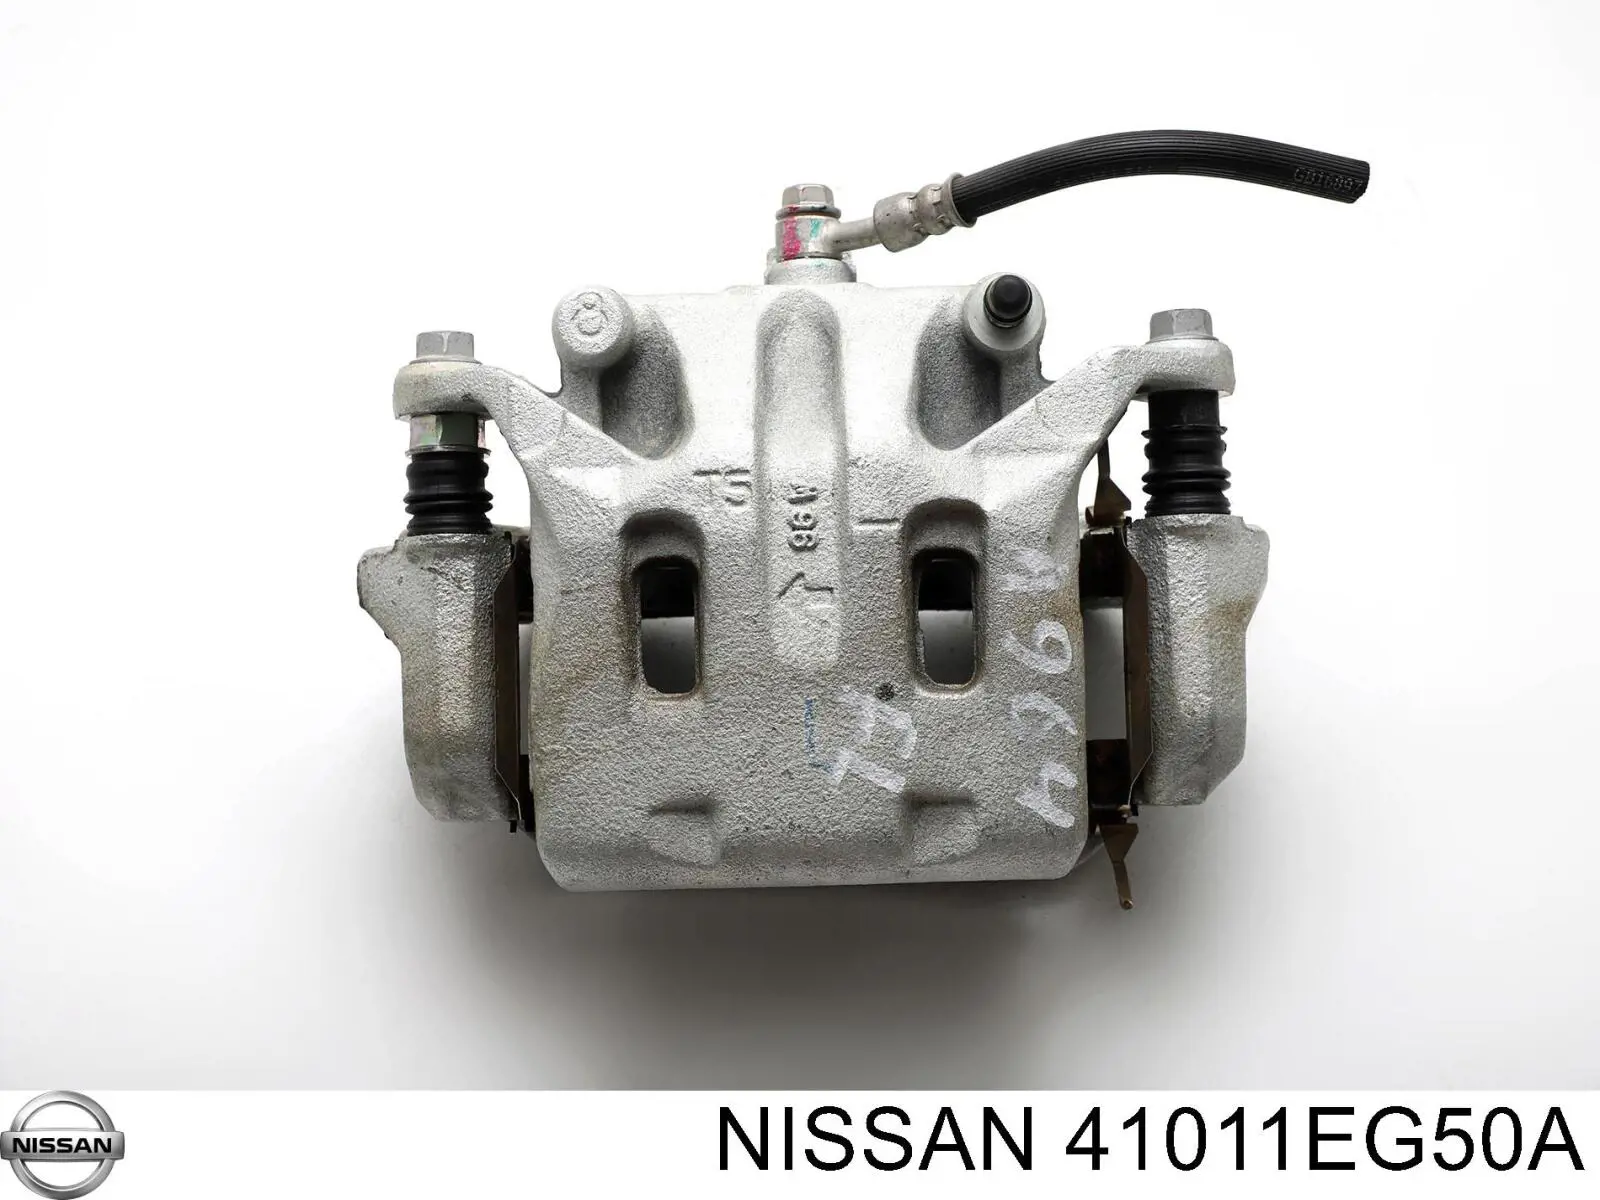 41011EG50A Nissan suporte do freio dianteiro esquerdo